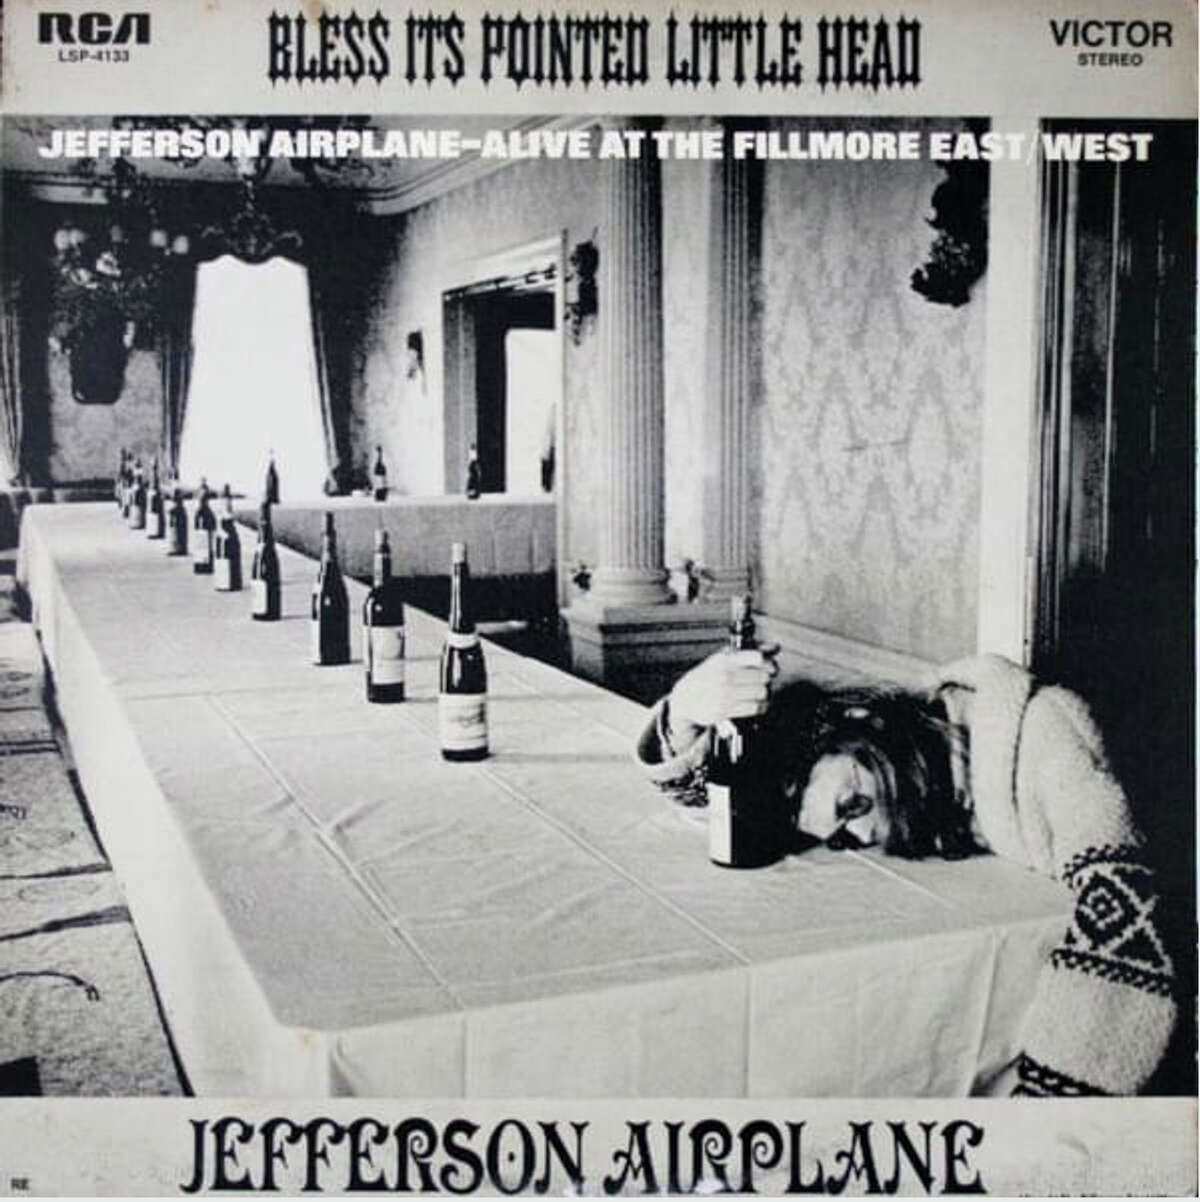 "Bendiga su cabecita puntiaguda", Jefferson Airplane, 1969.